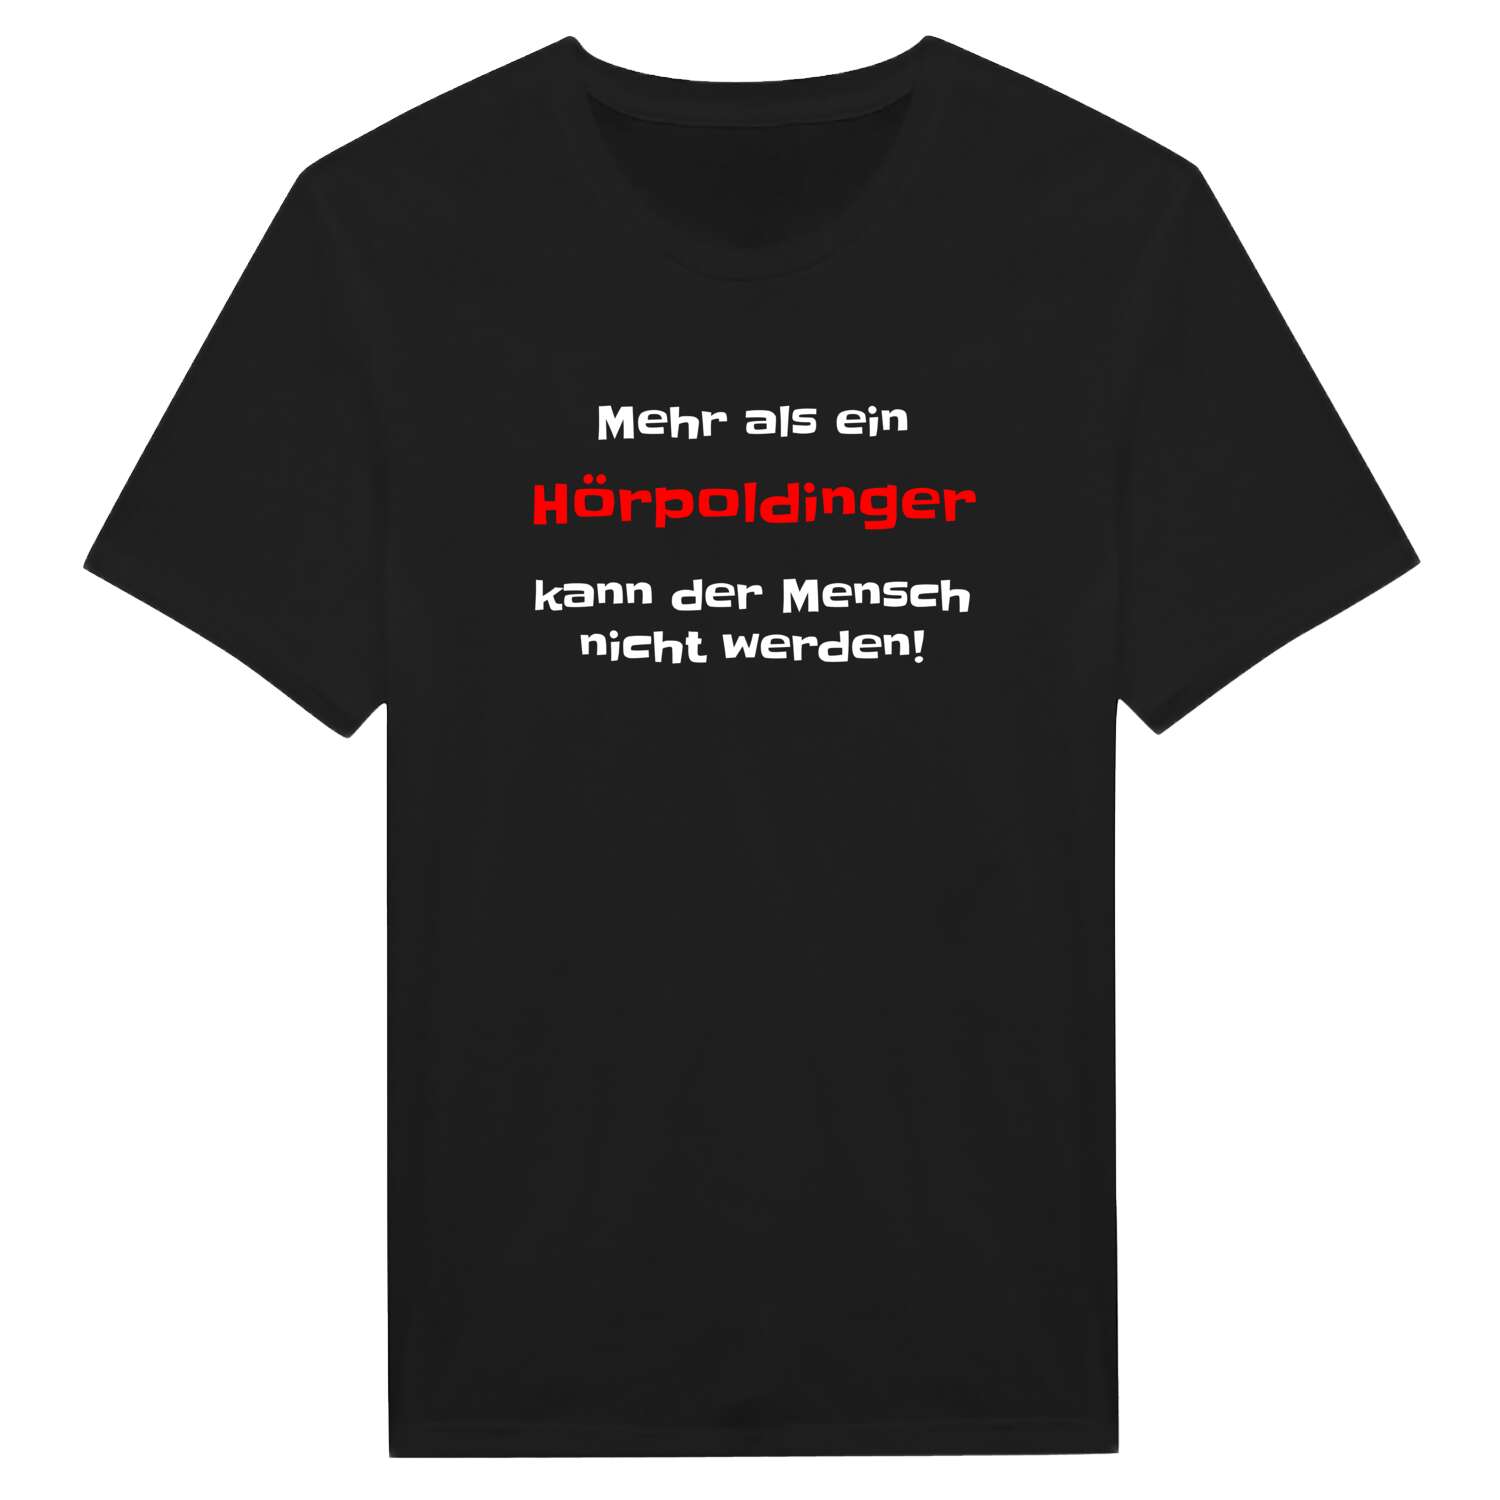 Hörpolding T-Shirt »Mehr als ein«